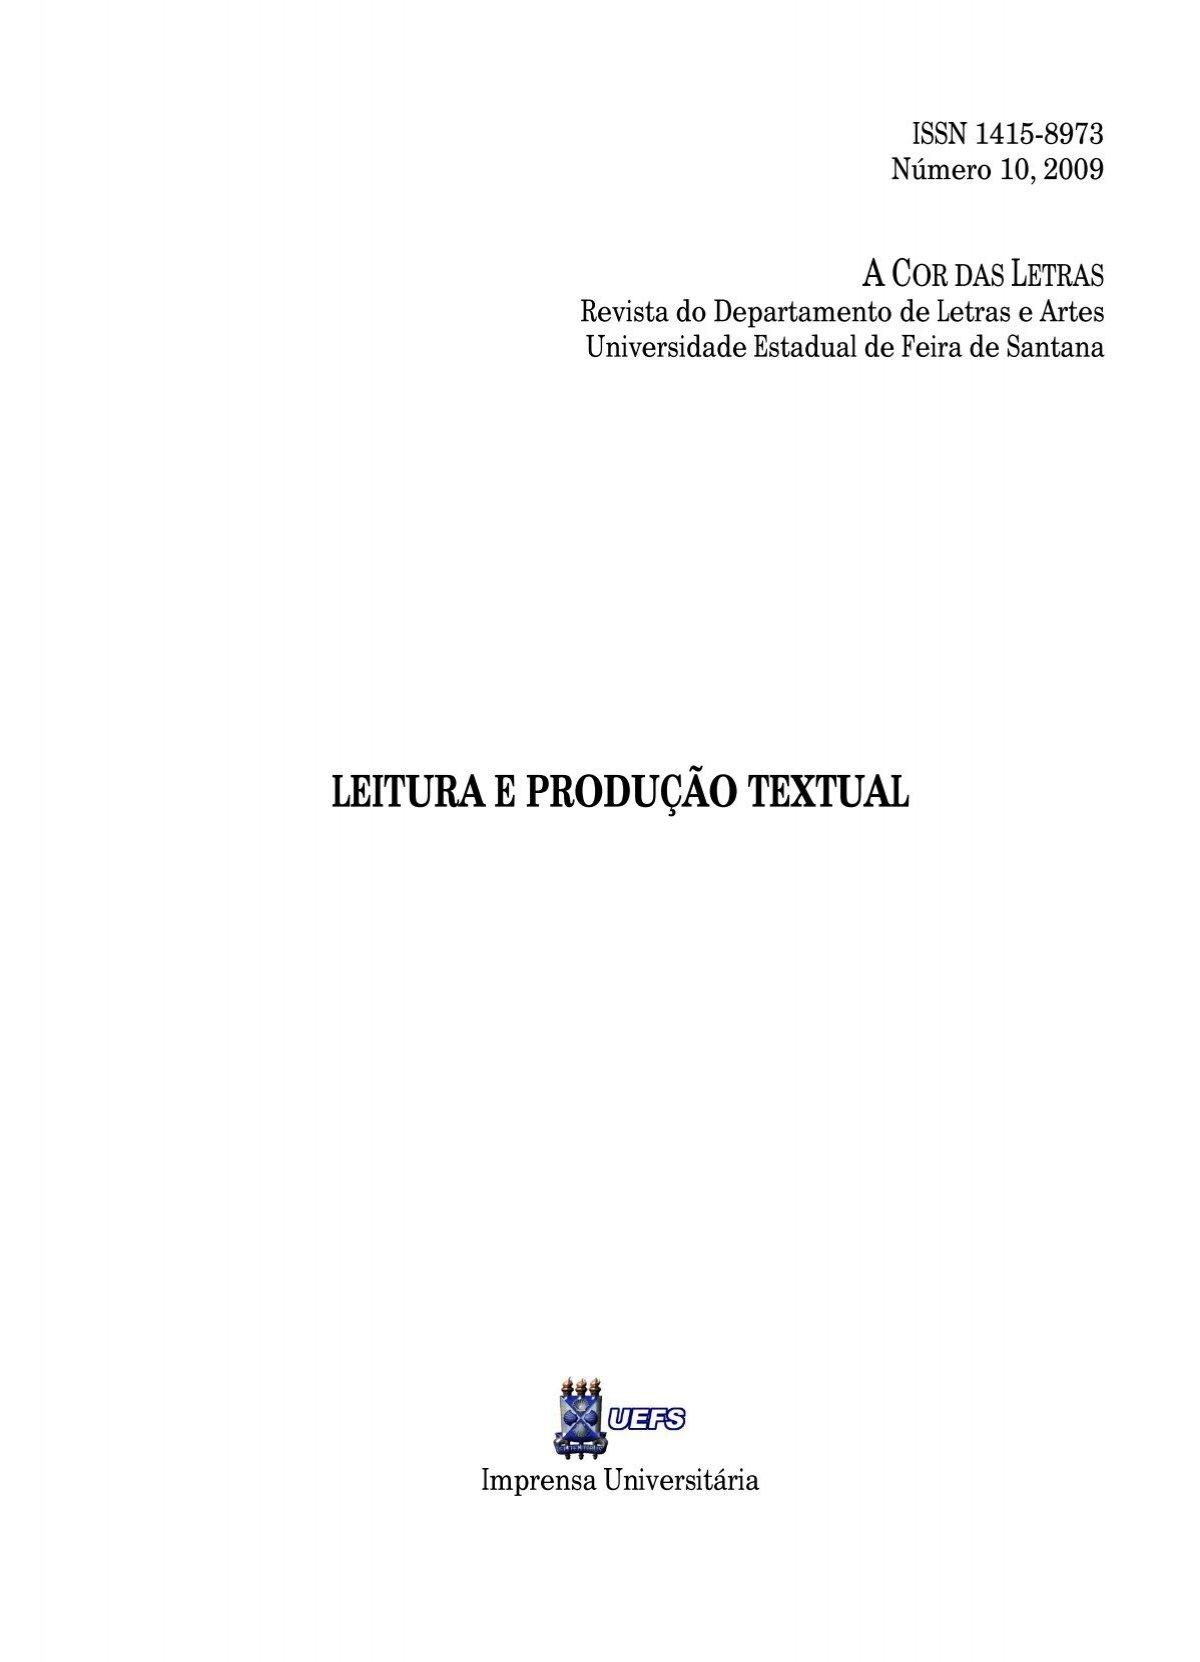 UFMG - Universidade Federal de Minas Gerais - UFMG Educativa veicula  leitura de 'Dom Casmurro', de Machado de Assis